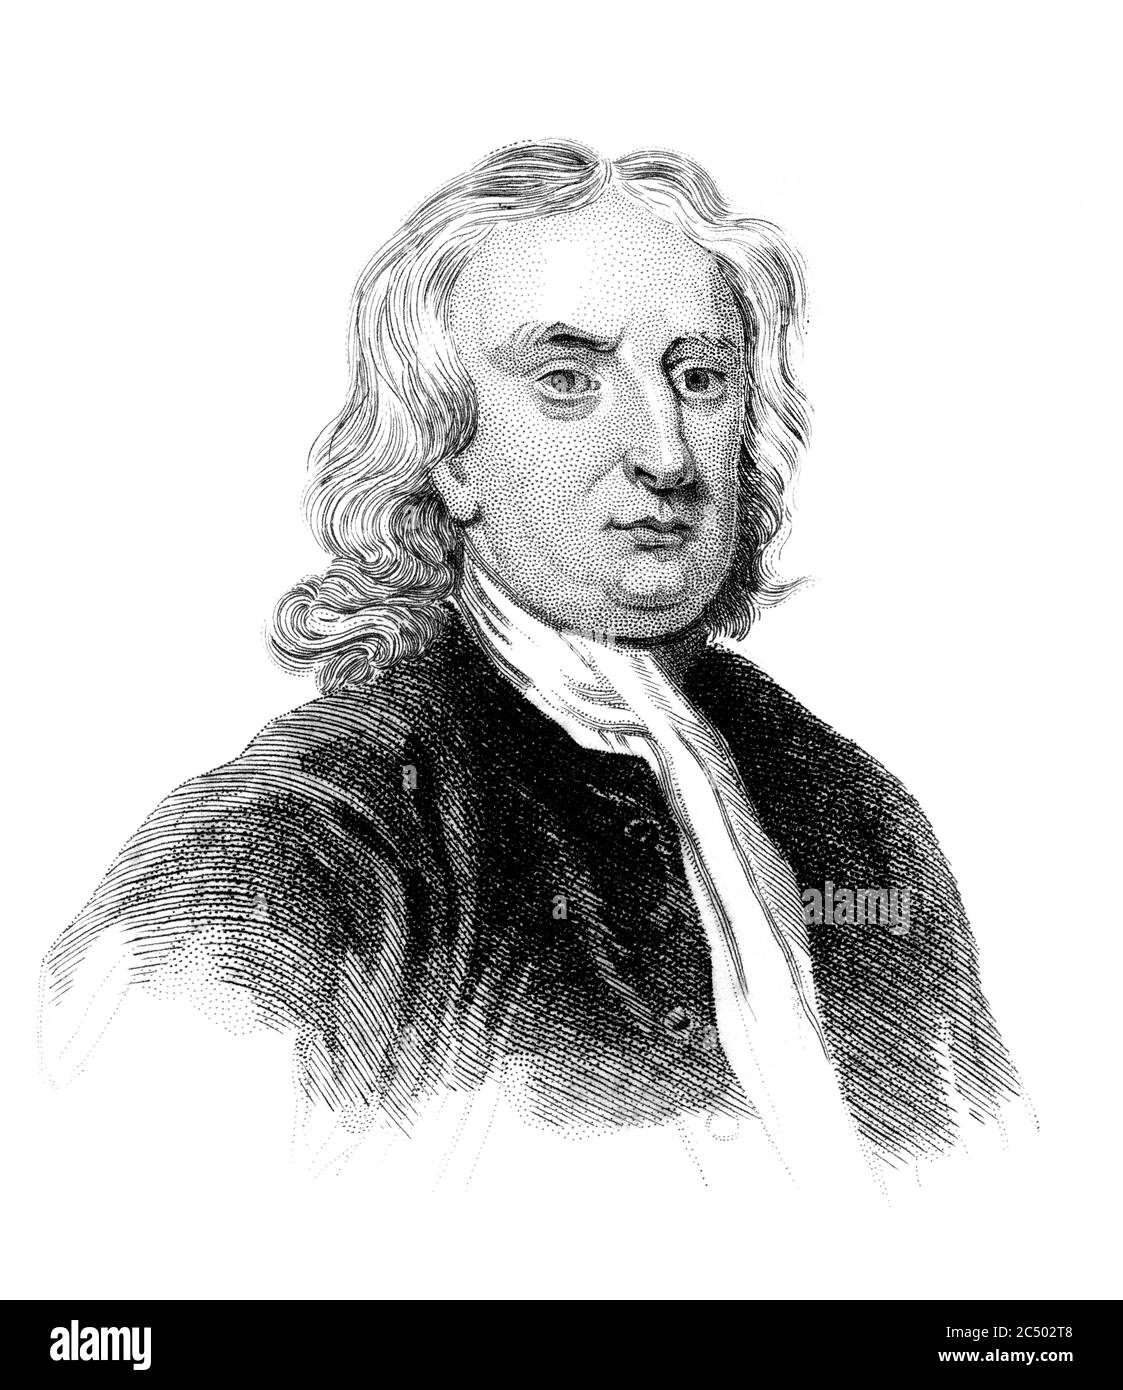 Eine gravierte Vintage Illustration Porträt Bild von Sir Isaac Newton 1643-1727 der berühmte englische Physiker, aus einem viktorianischen Buch datiert 1847, das ist n Stockfoto